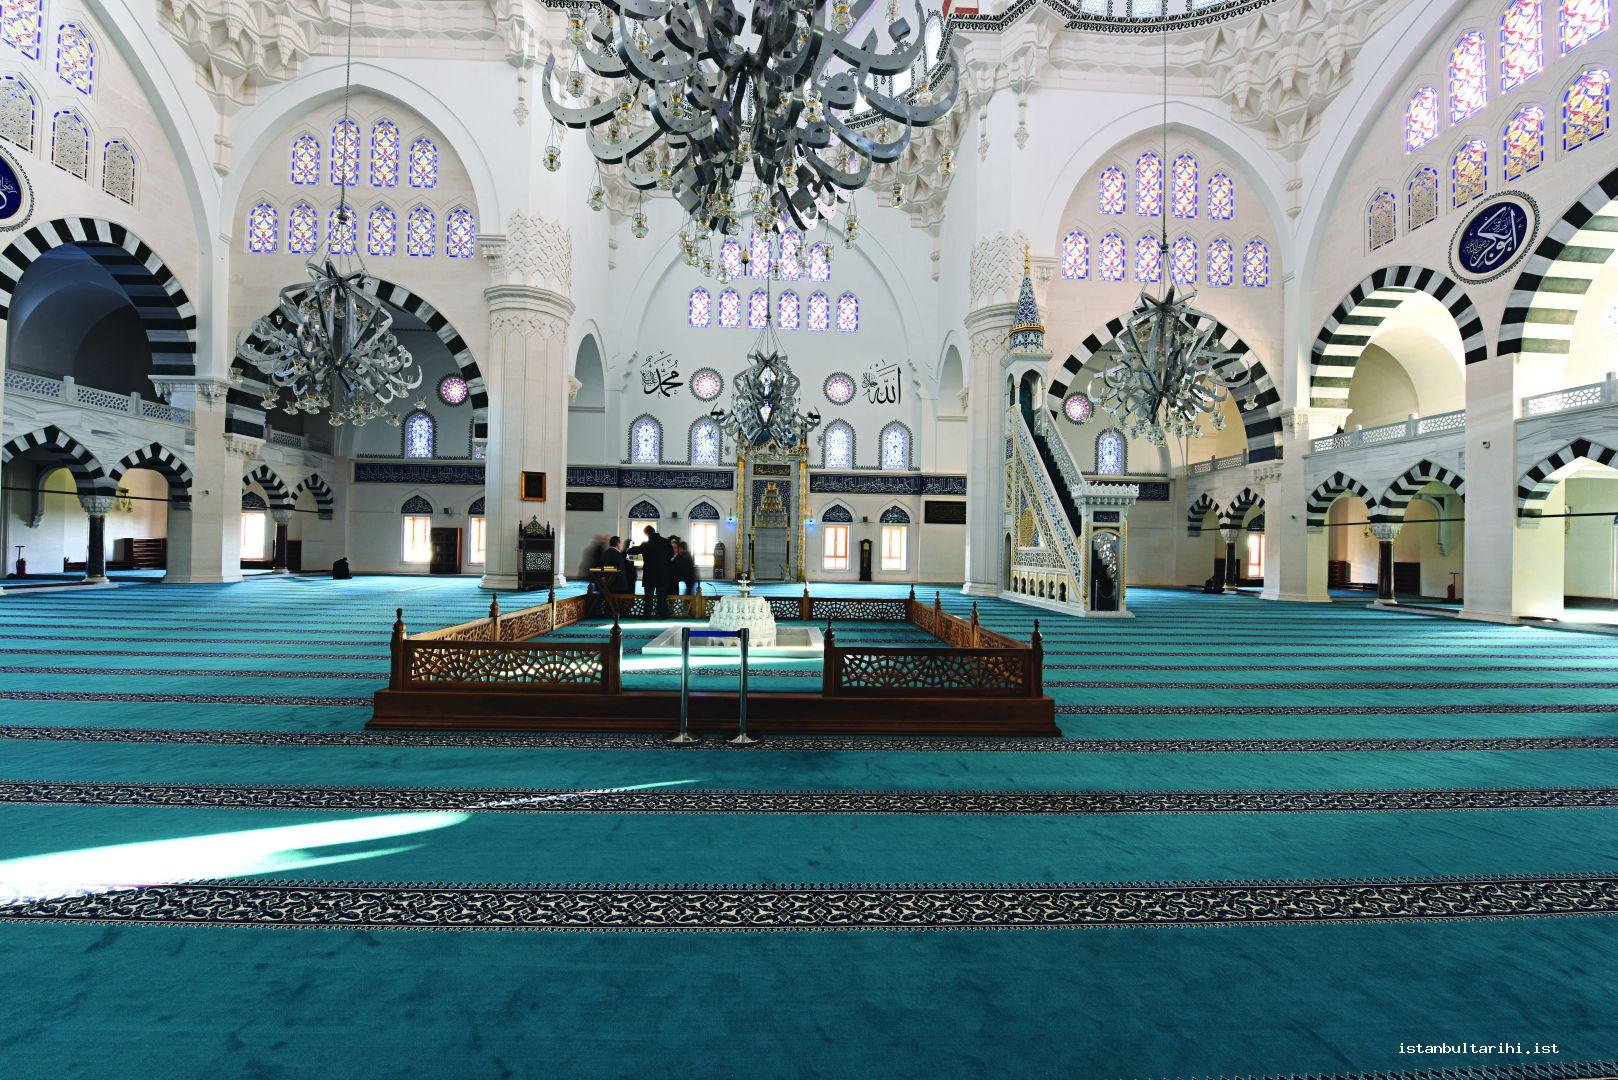 2b- Ataşehir Mimar Sinan Camii